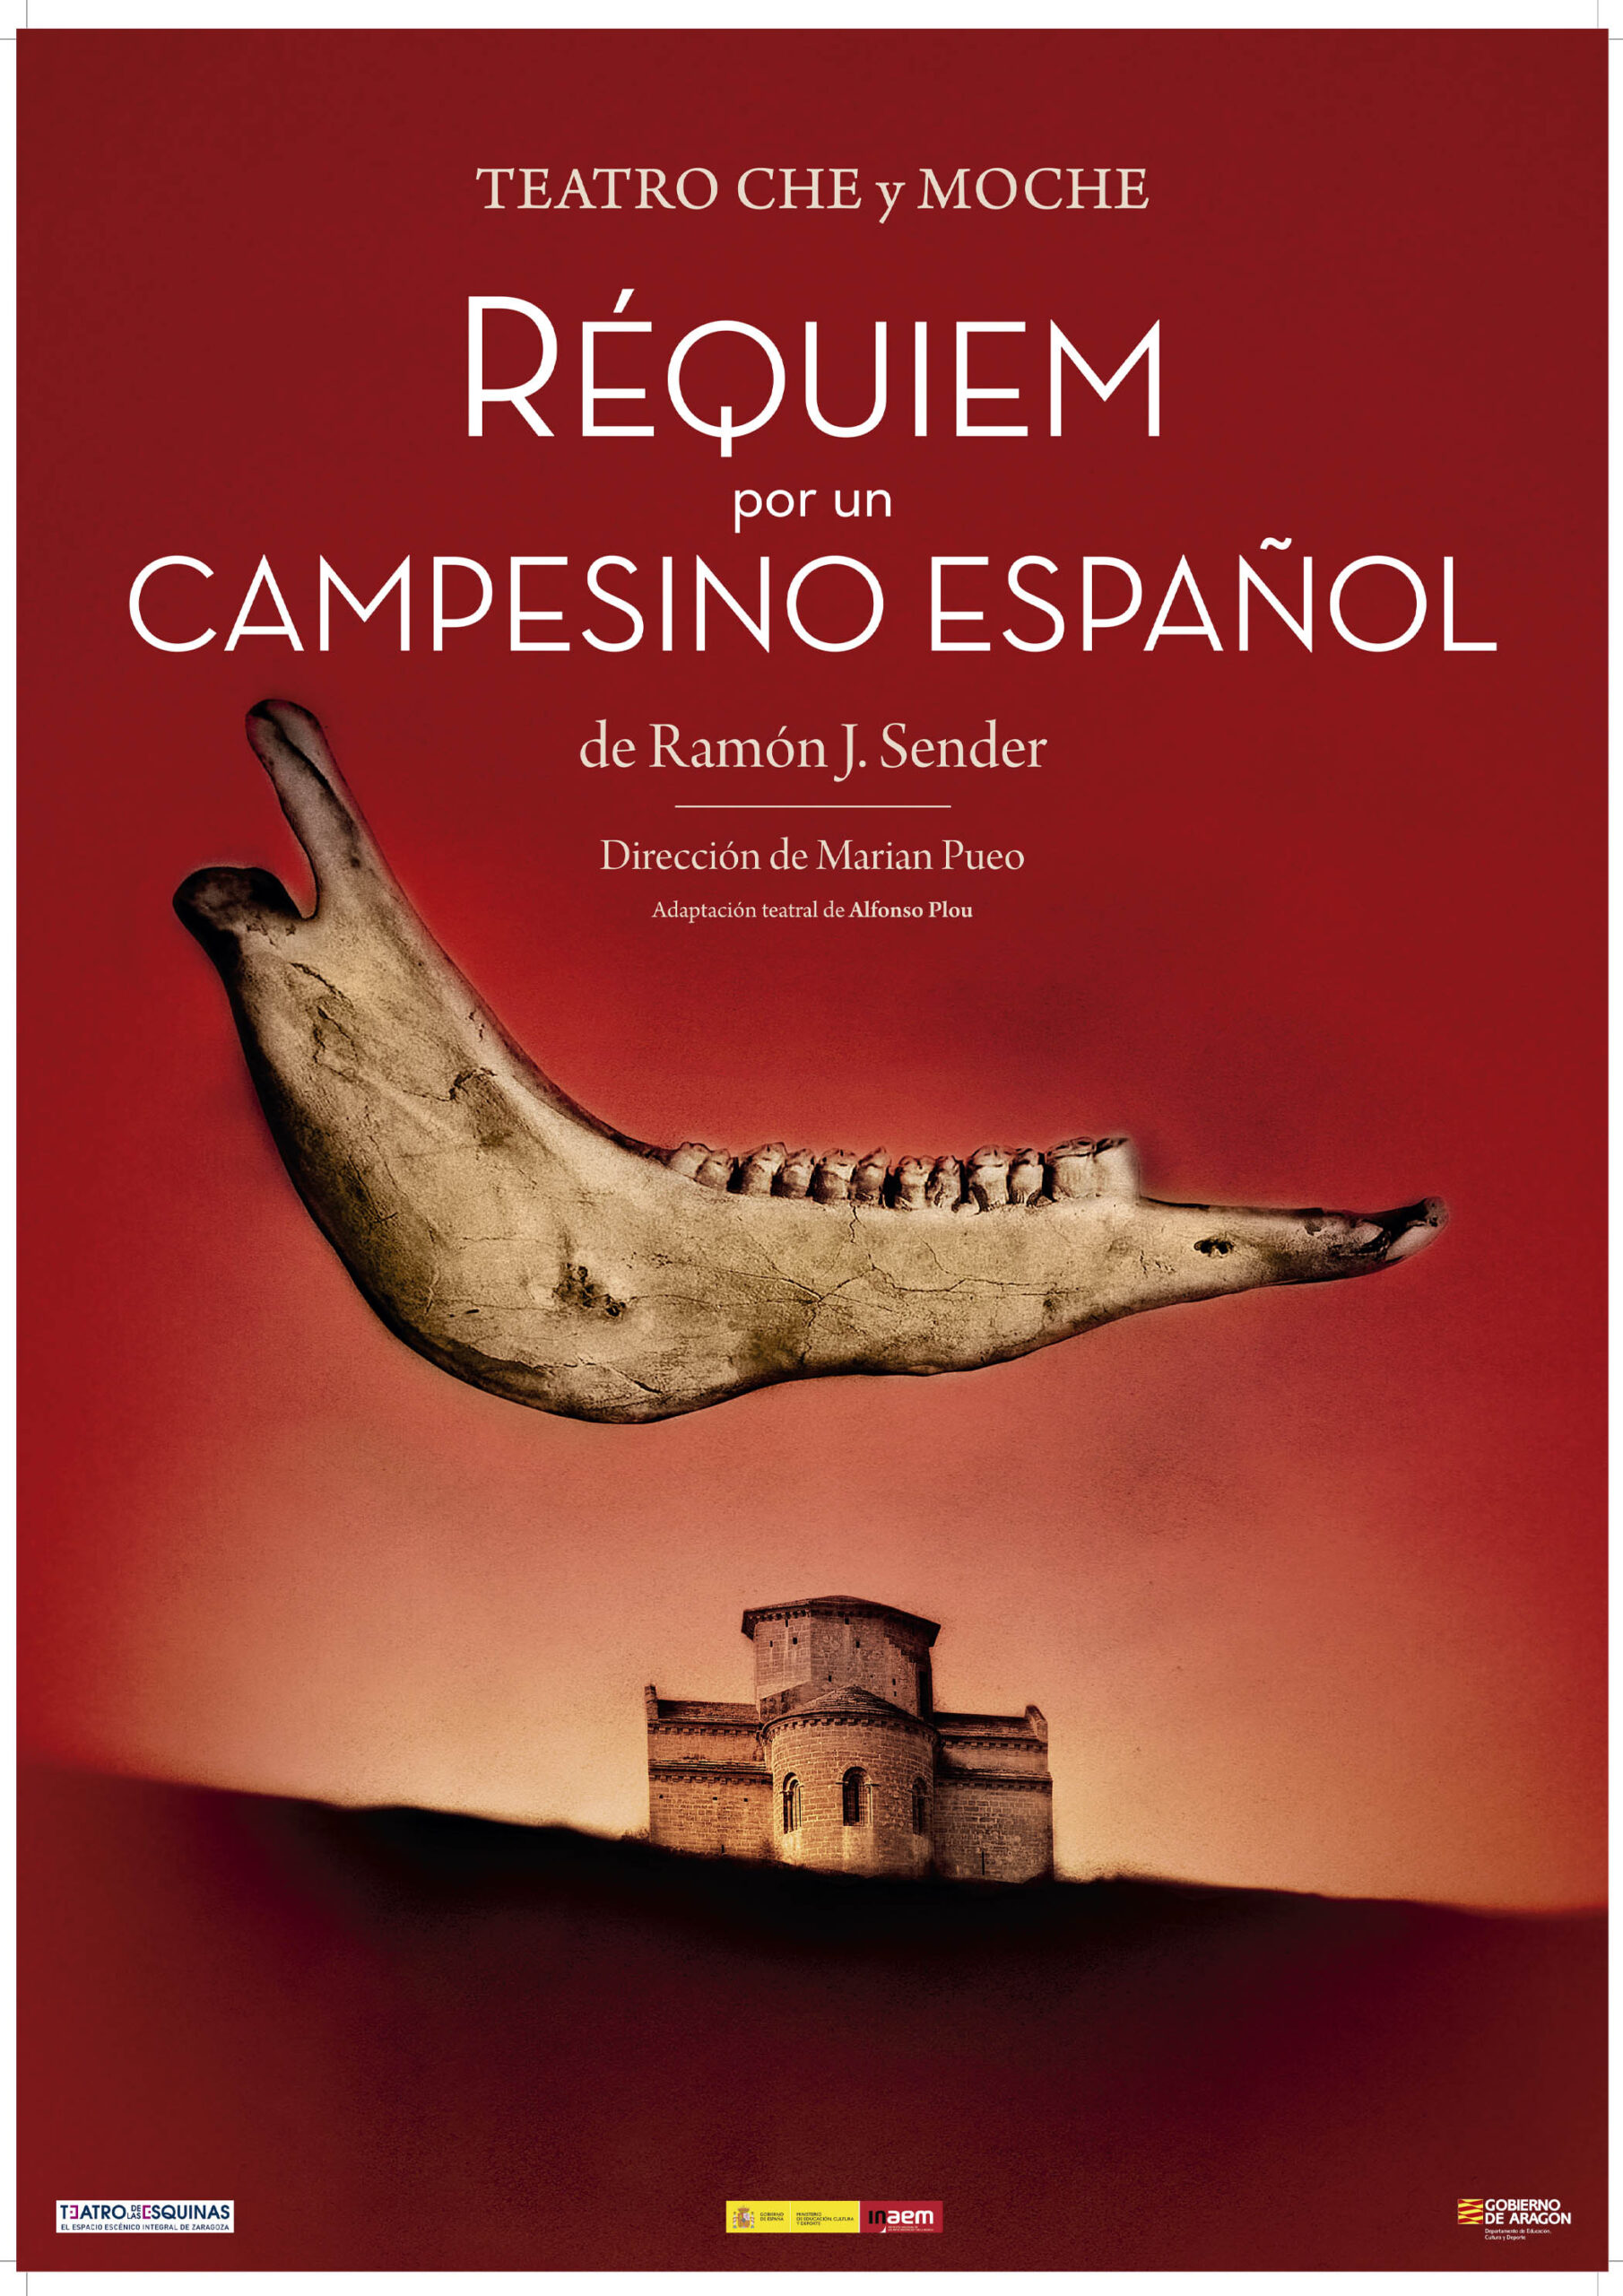 Requiem por un campesino español , réquiem significado en español